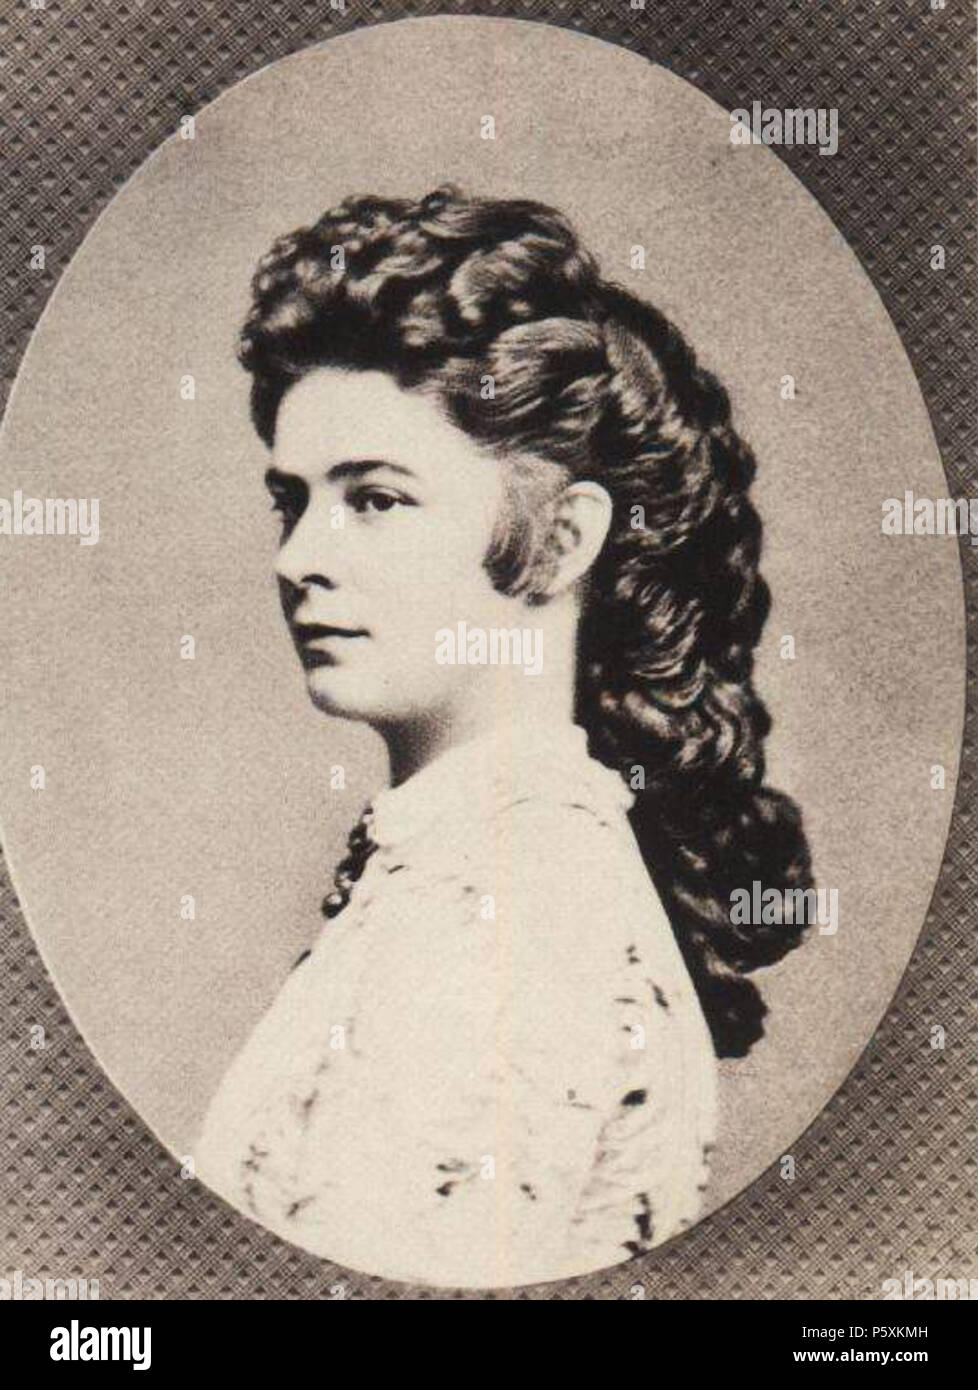 N/A. Anglais : coiffure élaborée de l'Impératrice Elisabeth d'Autriche, c.1862 . 7 septembre 2011. 509 inconnu de l'Impératrice Elisabeth d'Autriche, tous les jours hairstyle Banque D'Images